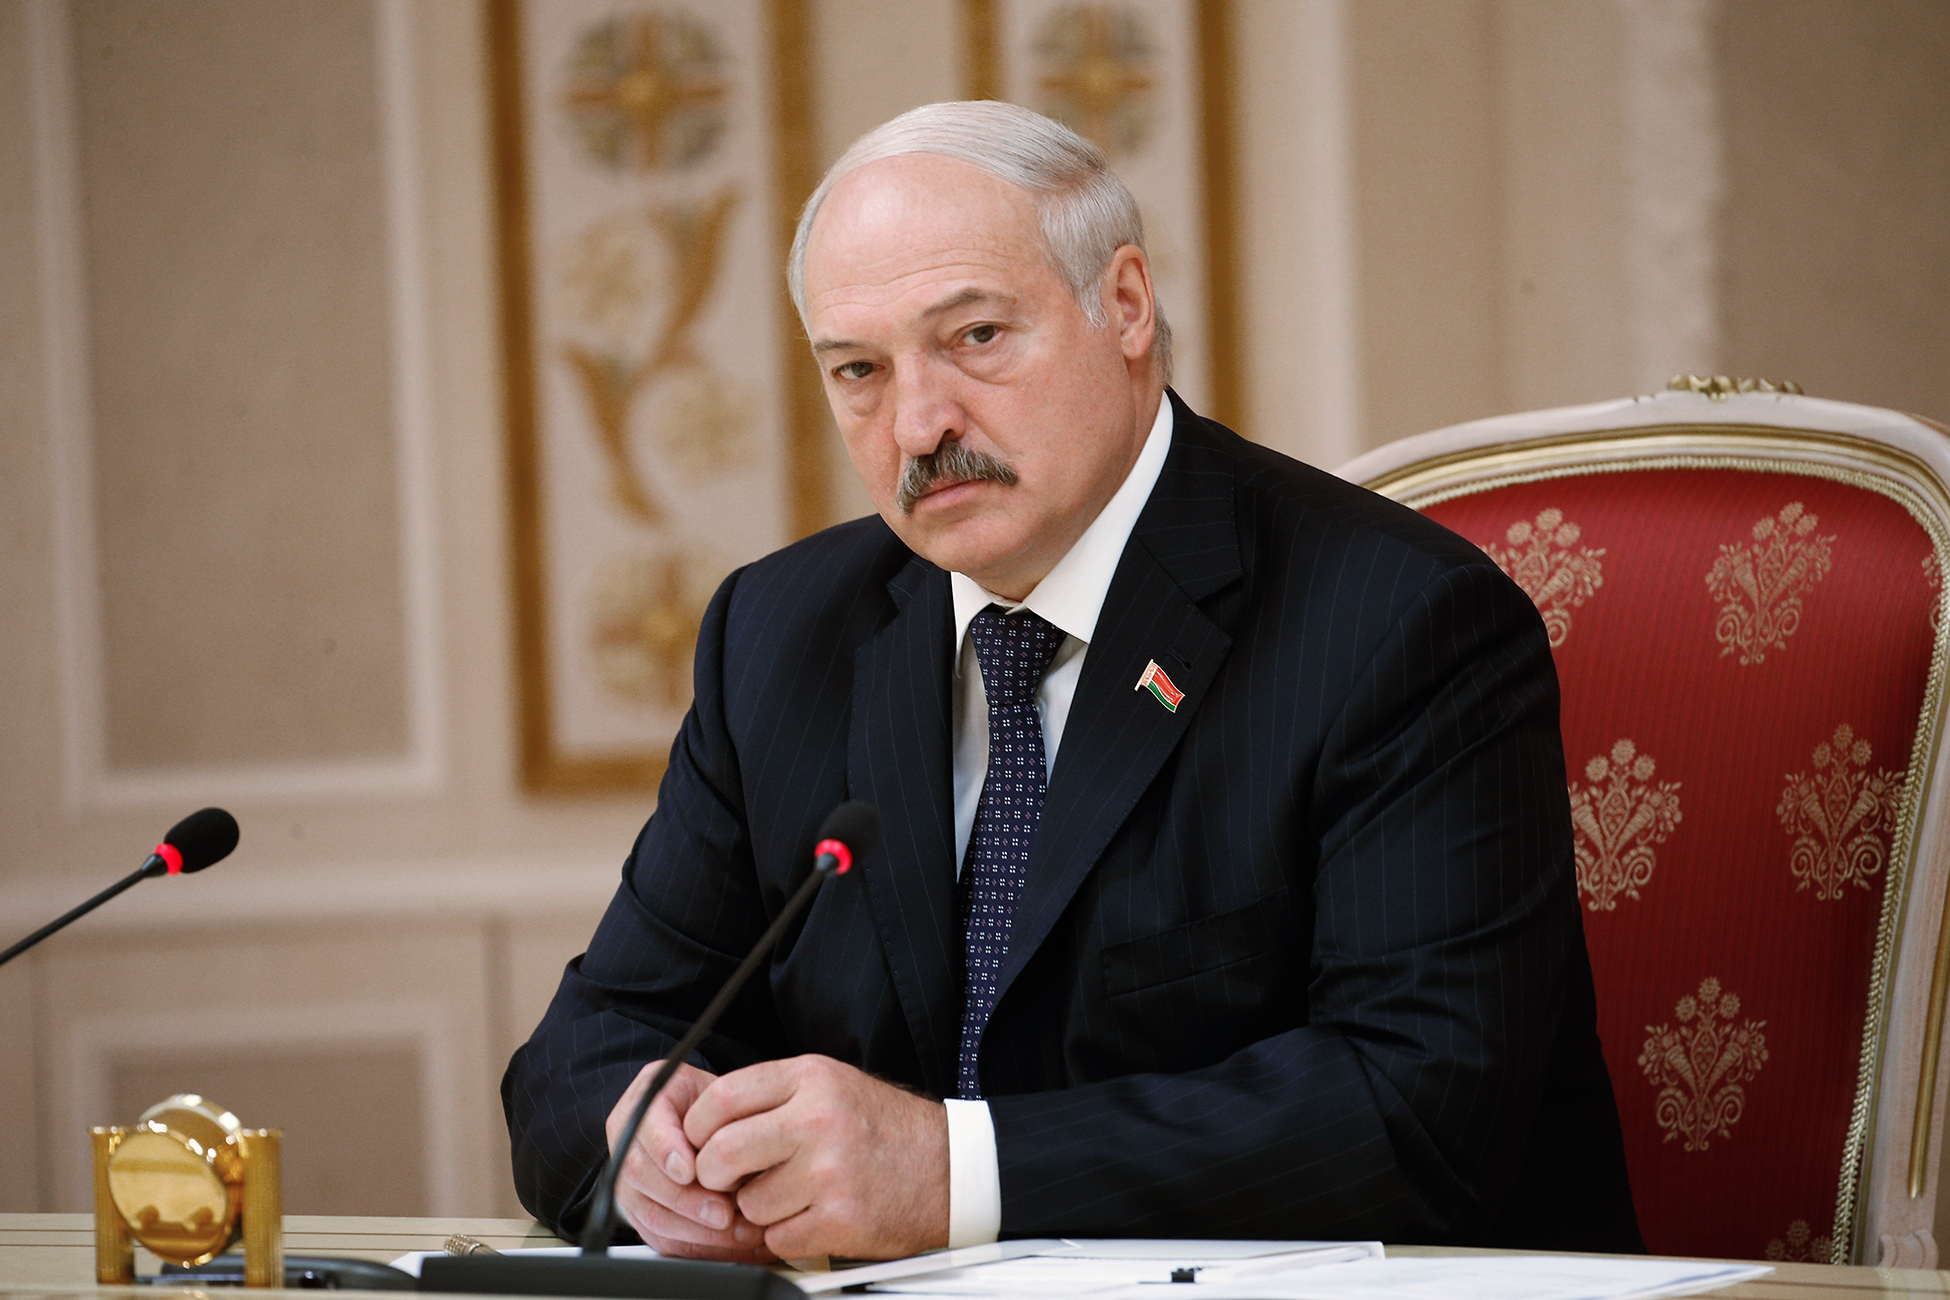 Лукашенко отверг идею слияния России и Белоруссии